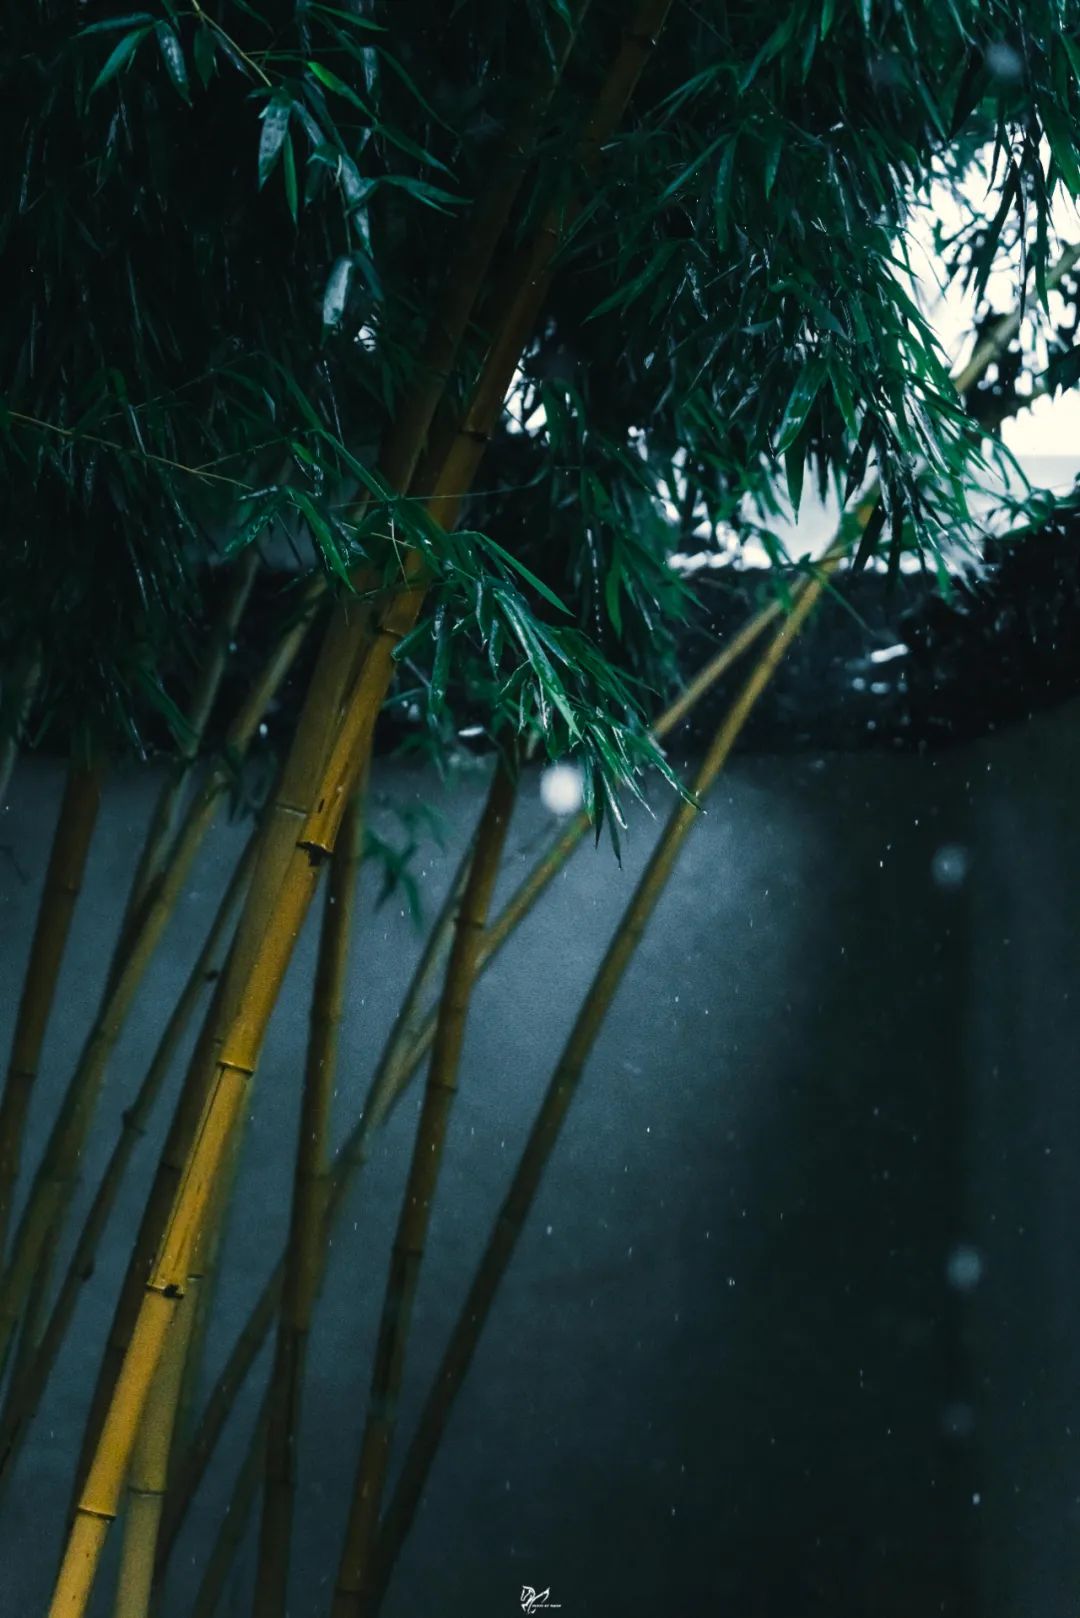 竹子在风雨中的样子图片